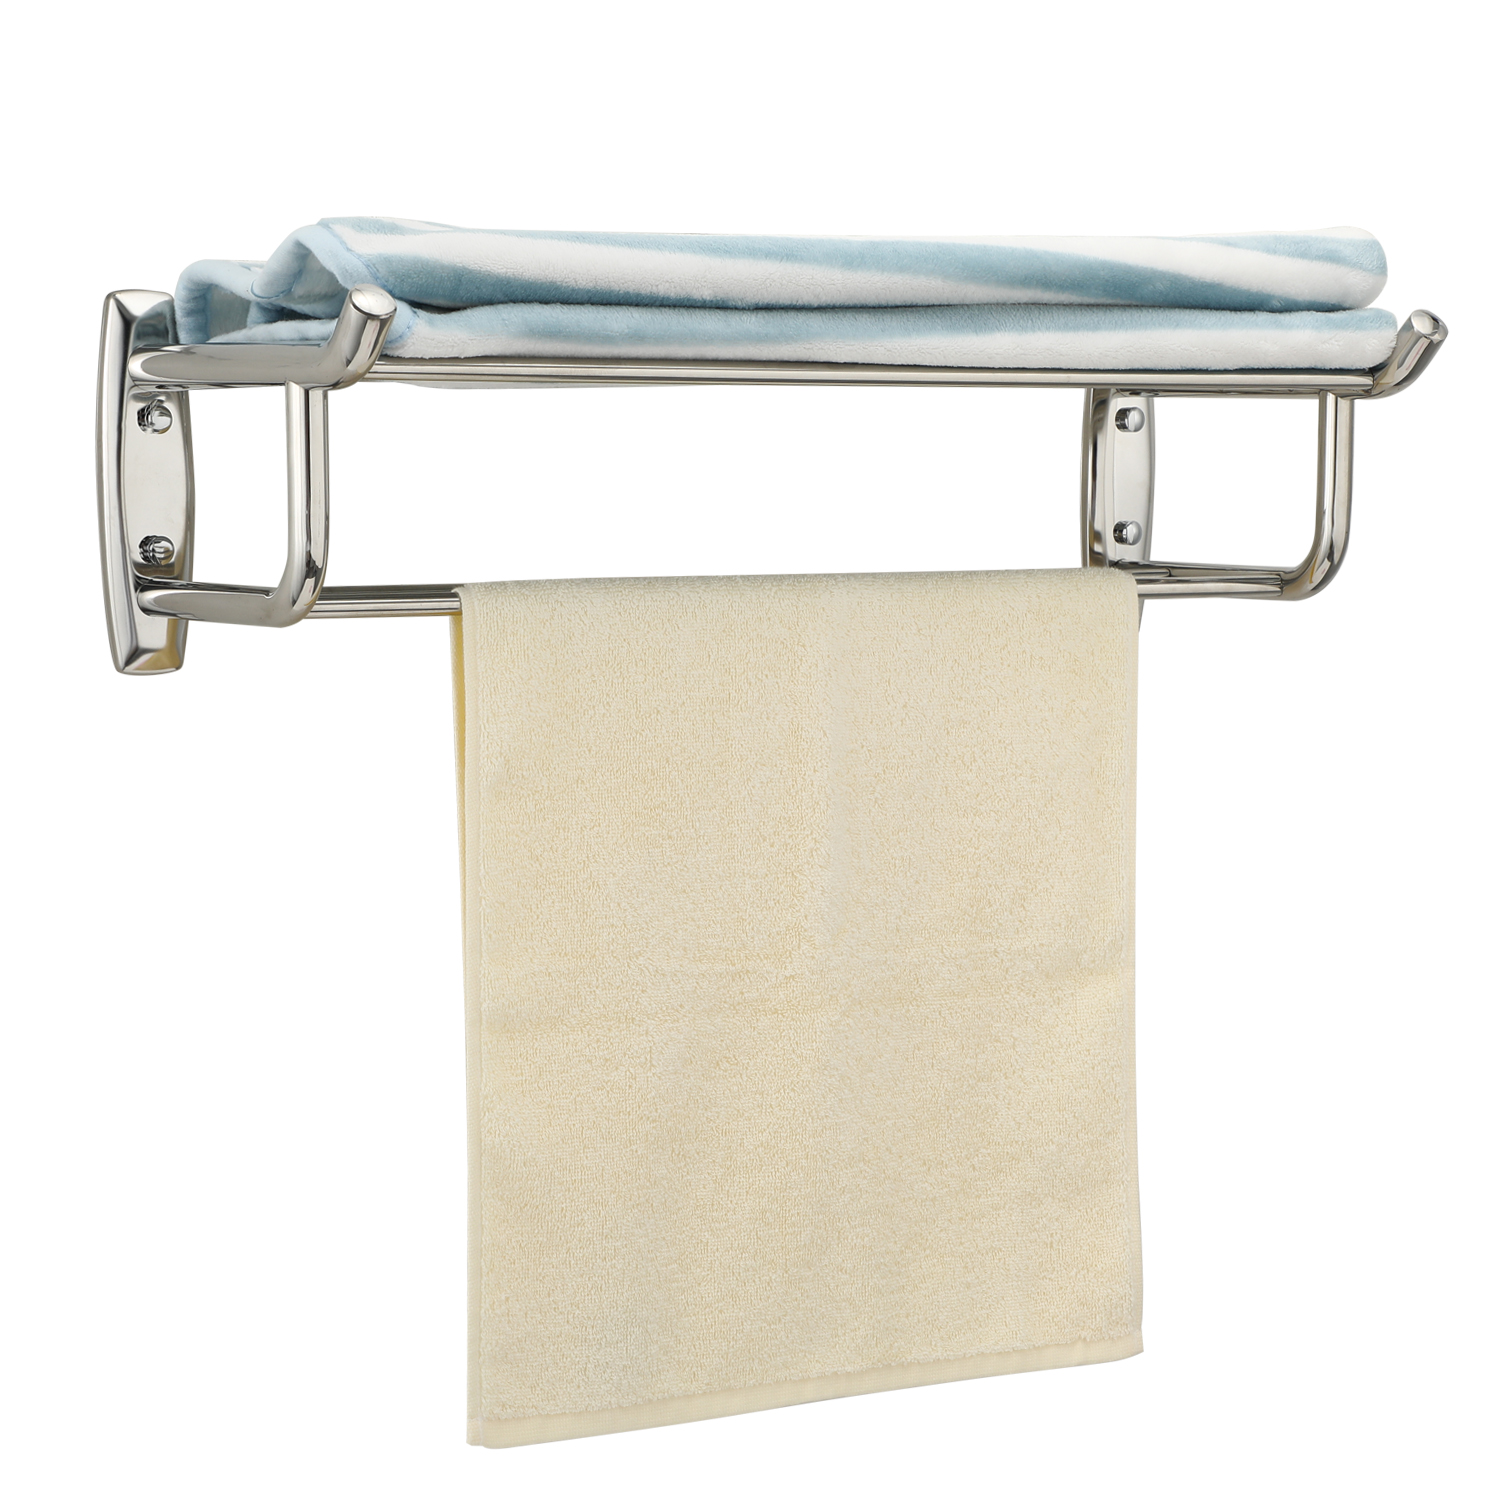 Porte-serviettes double couche en acier inoxydable